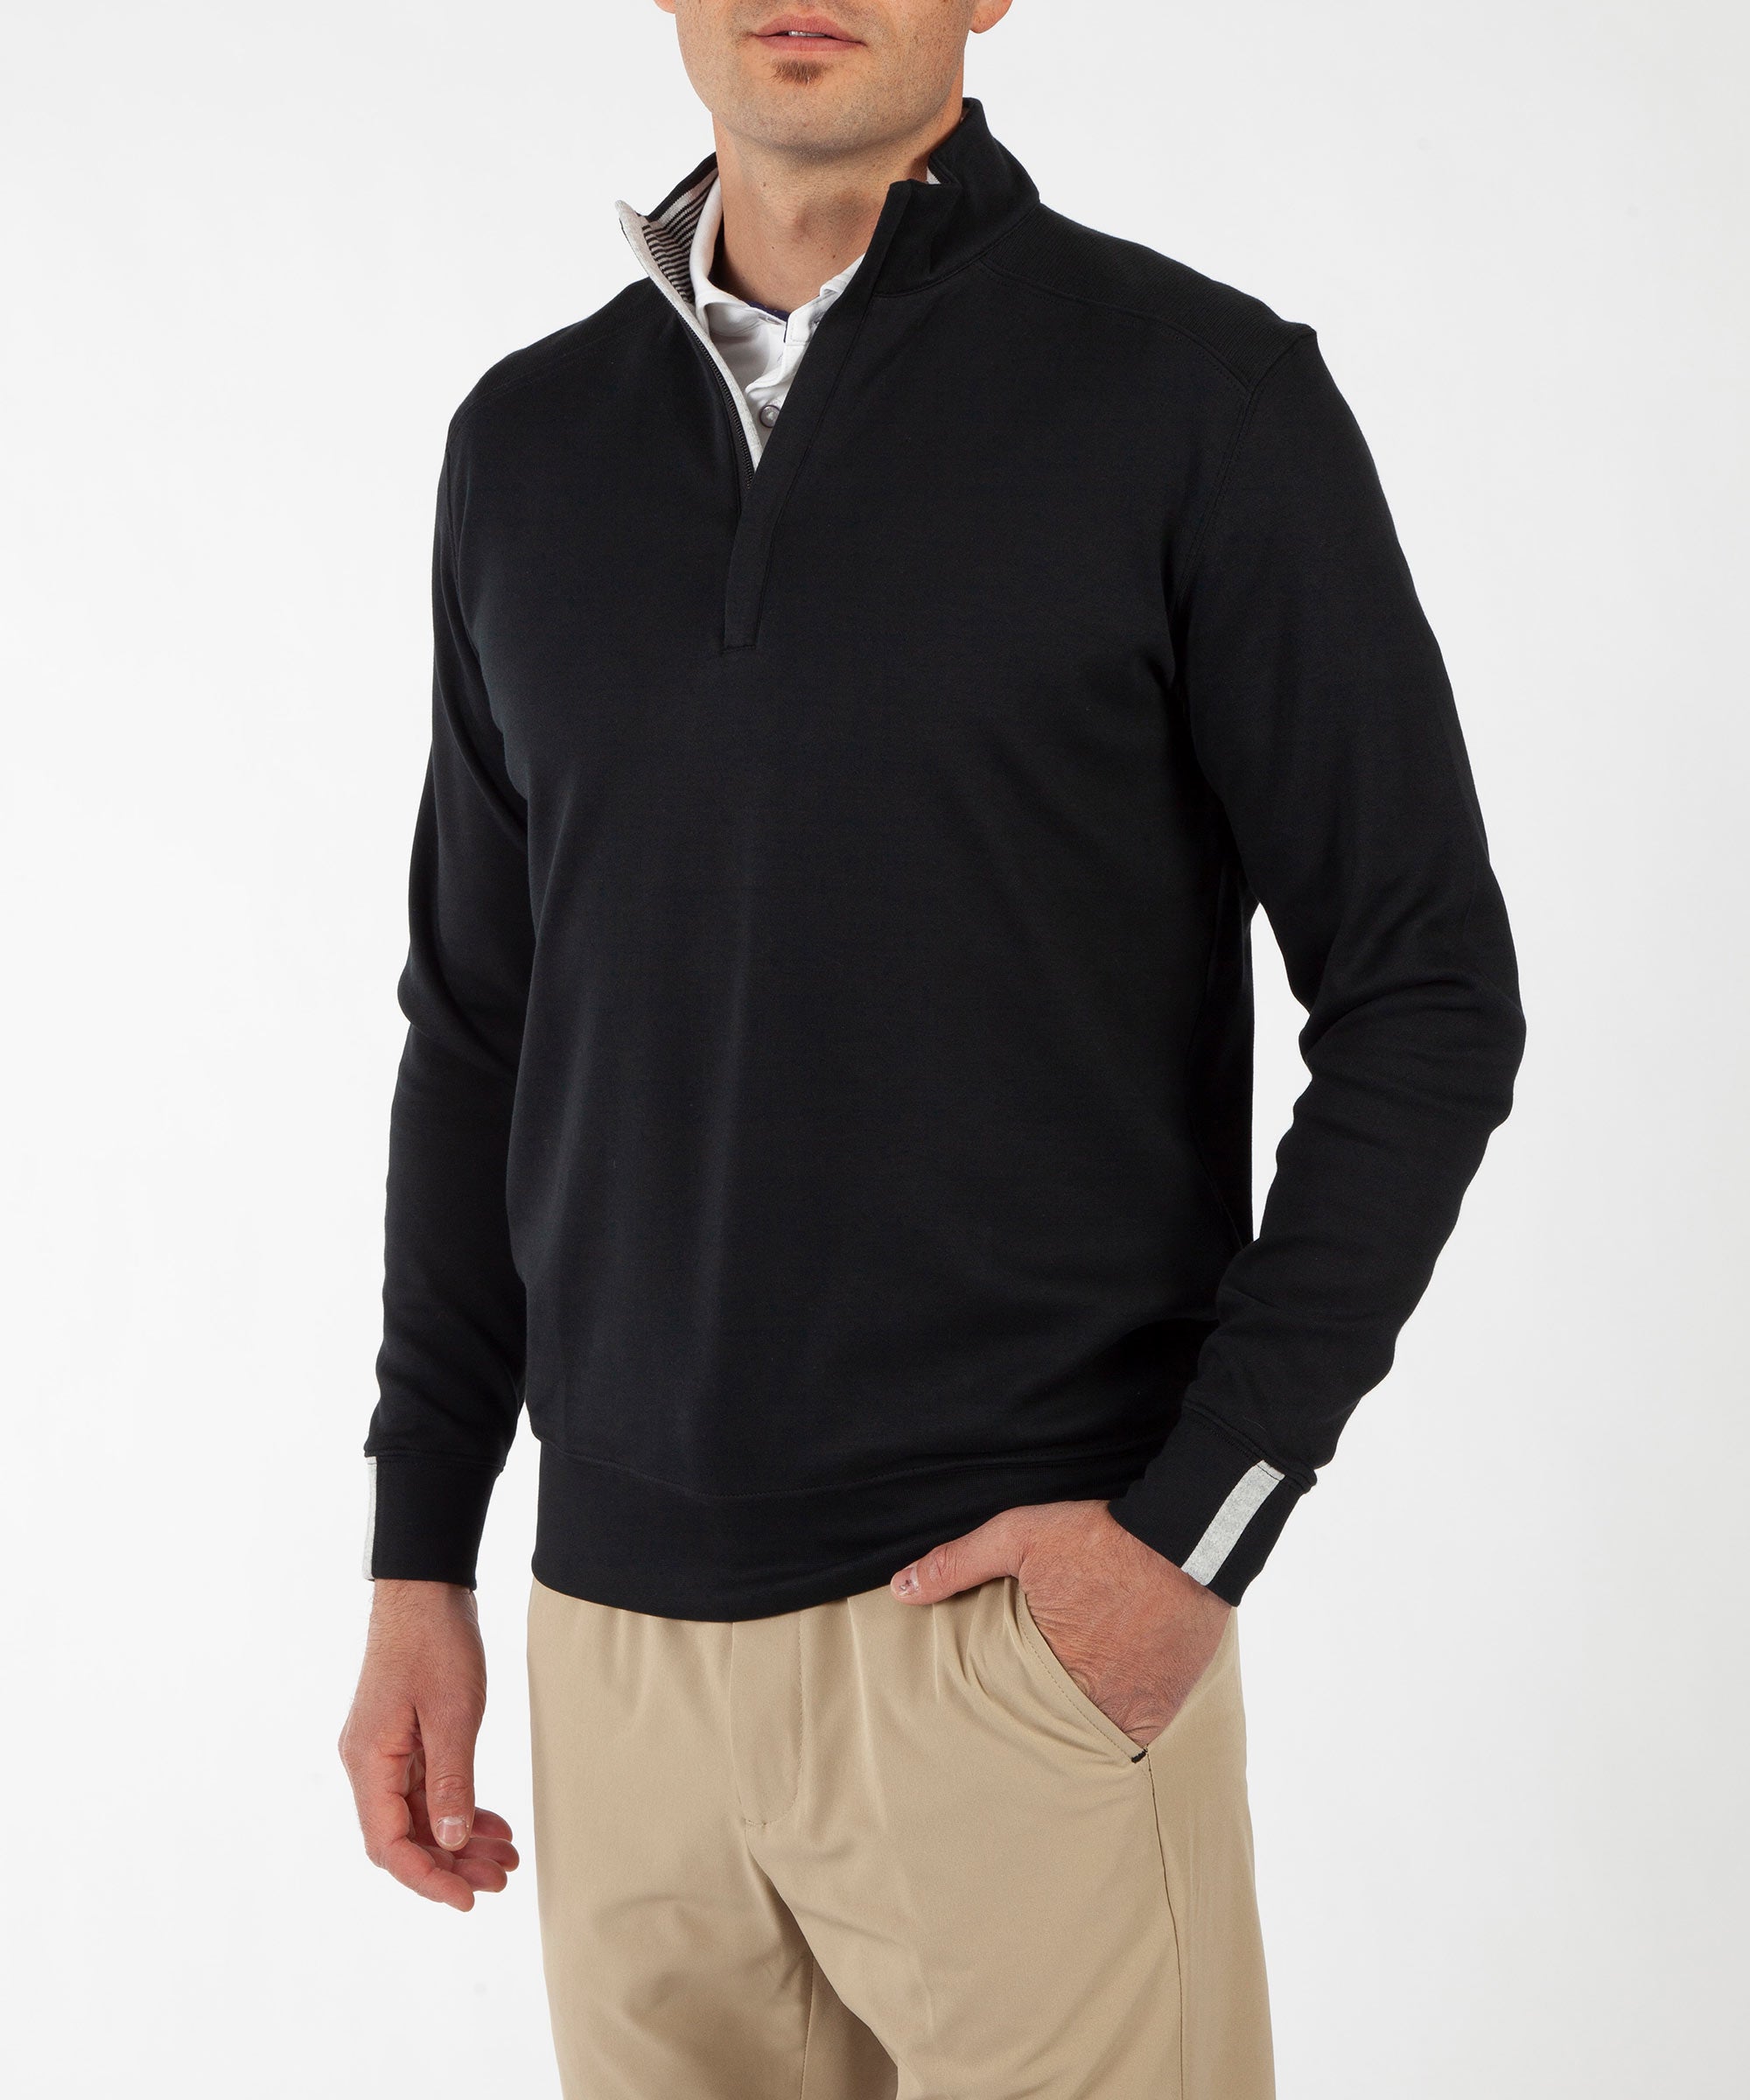 Raffi Linea Uomo Men's Quarter Zip Sweater, Atlantic, Medium at   Men's Clothing store: Pullover Sweaters